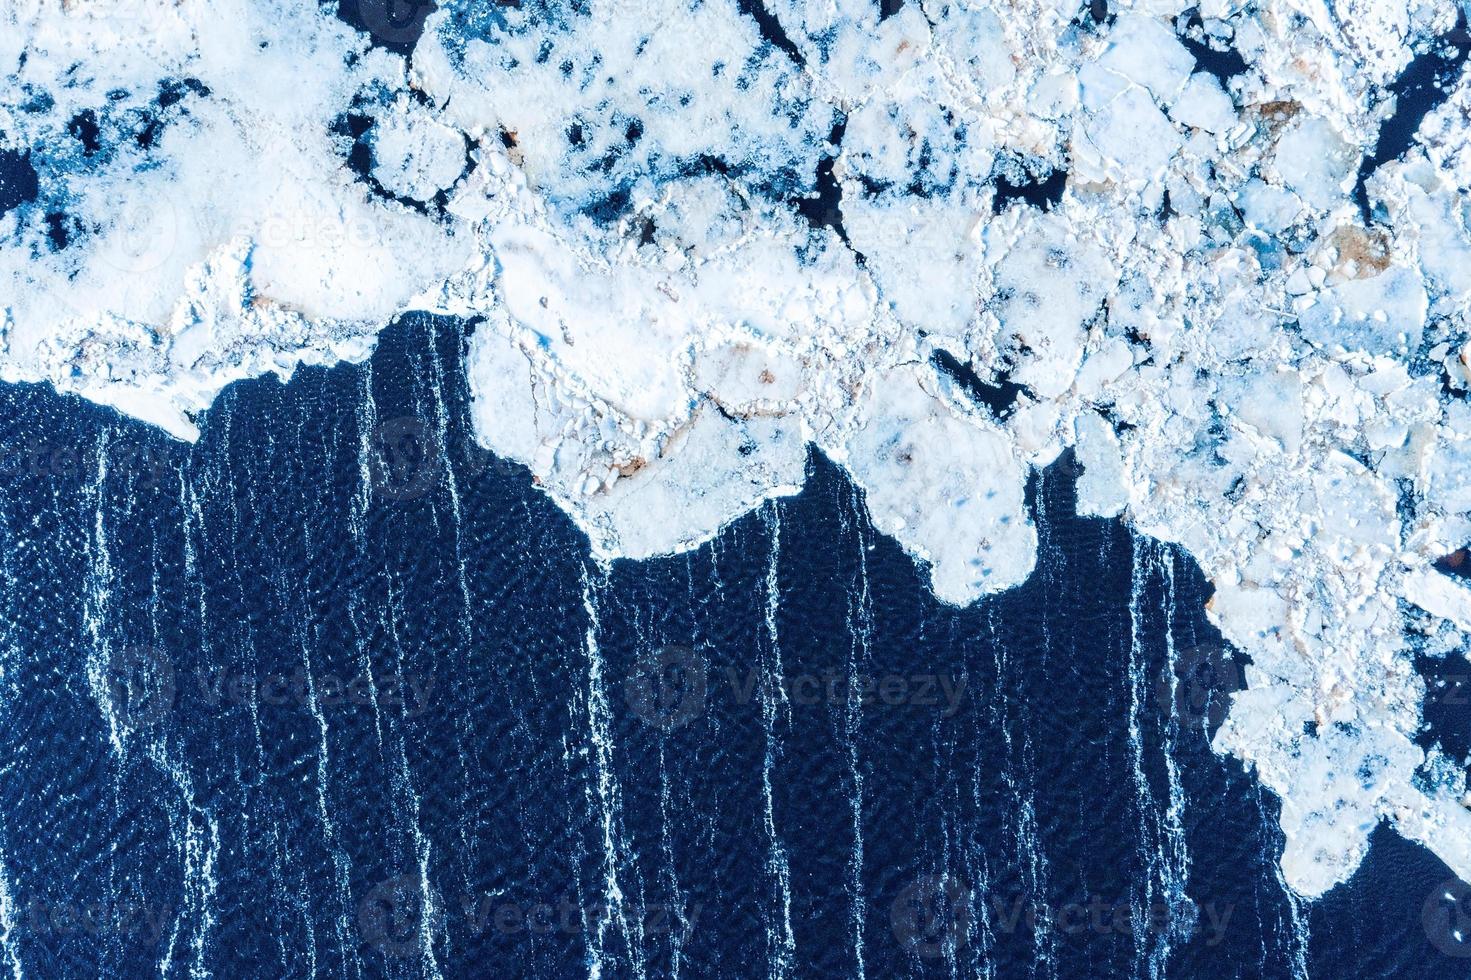 de gros morceaux de blocs de glace formant un beau motif, après que le navire brise-glace soit passé et ait écrasé la glace densément tassée. photo